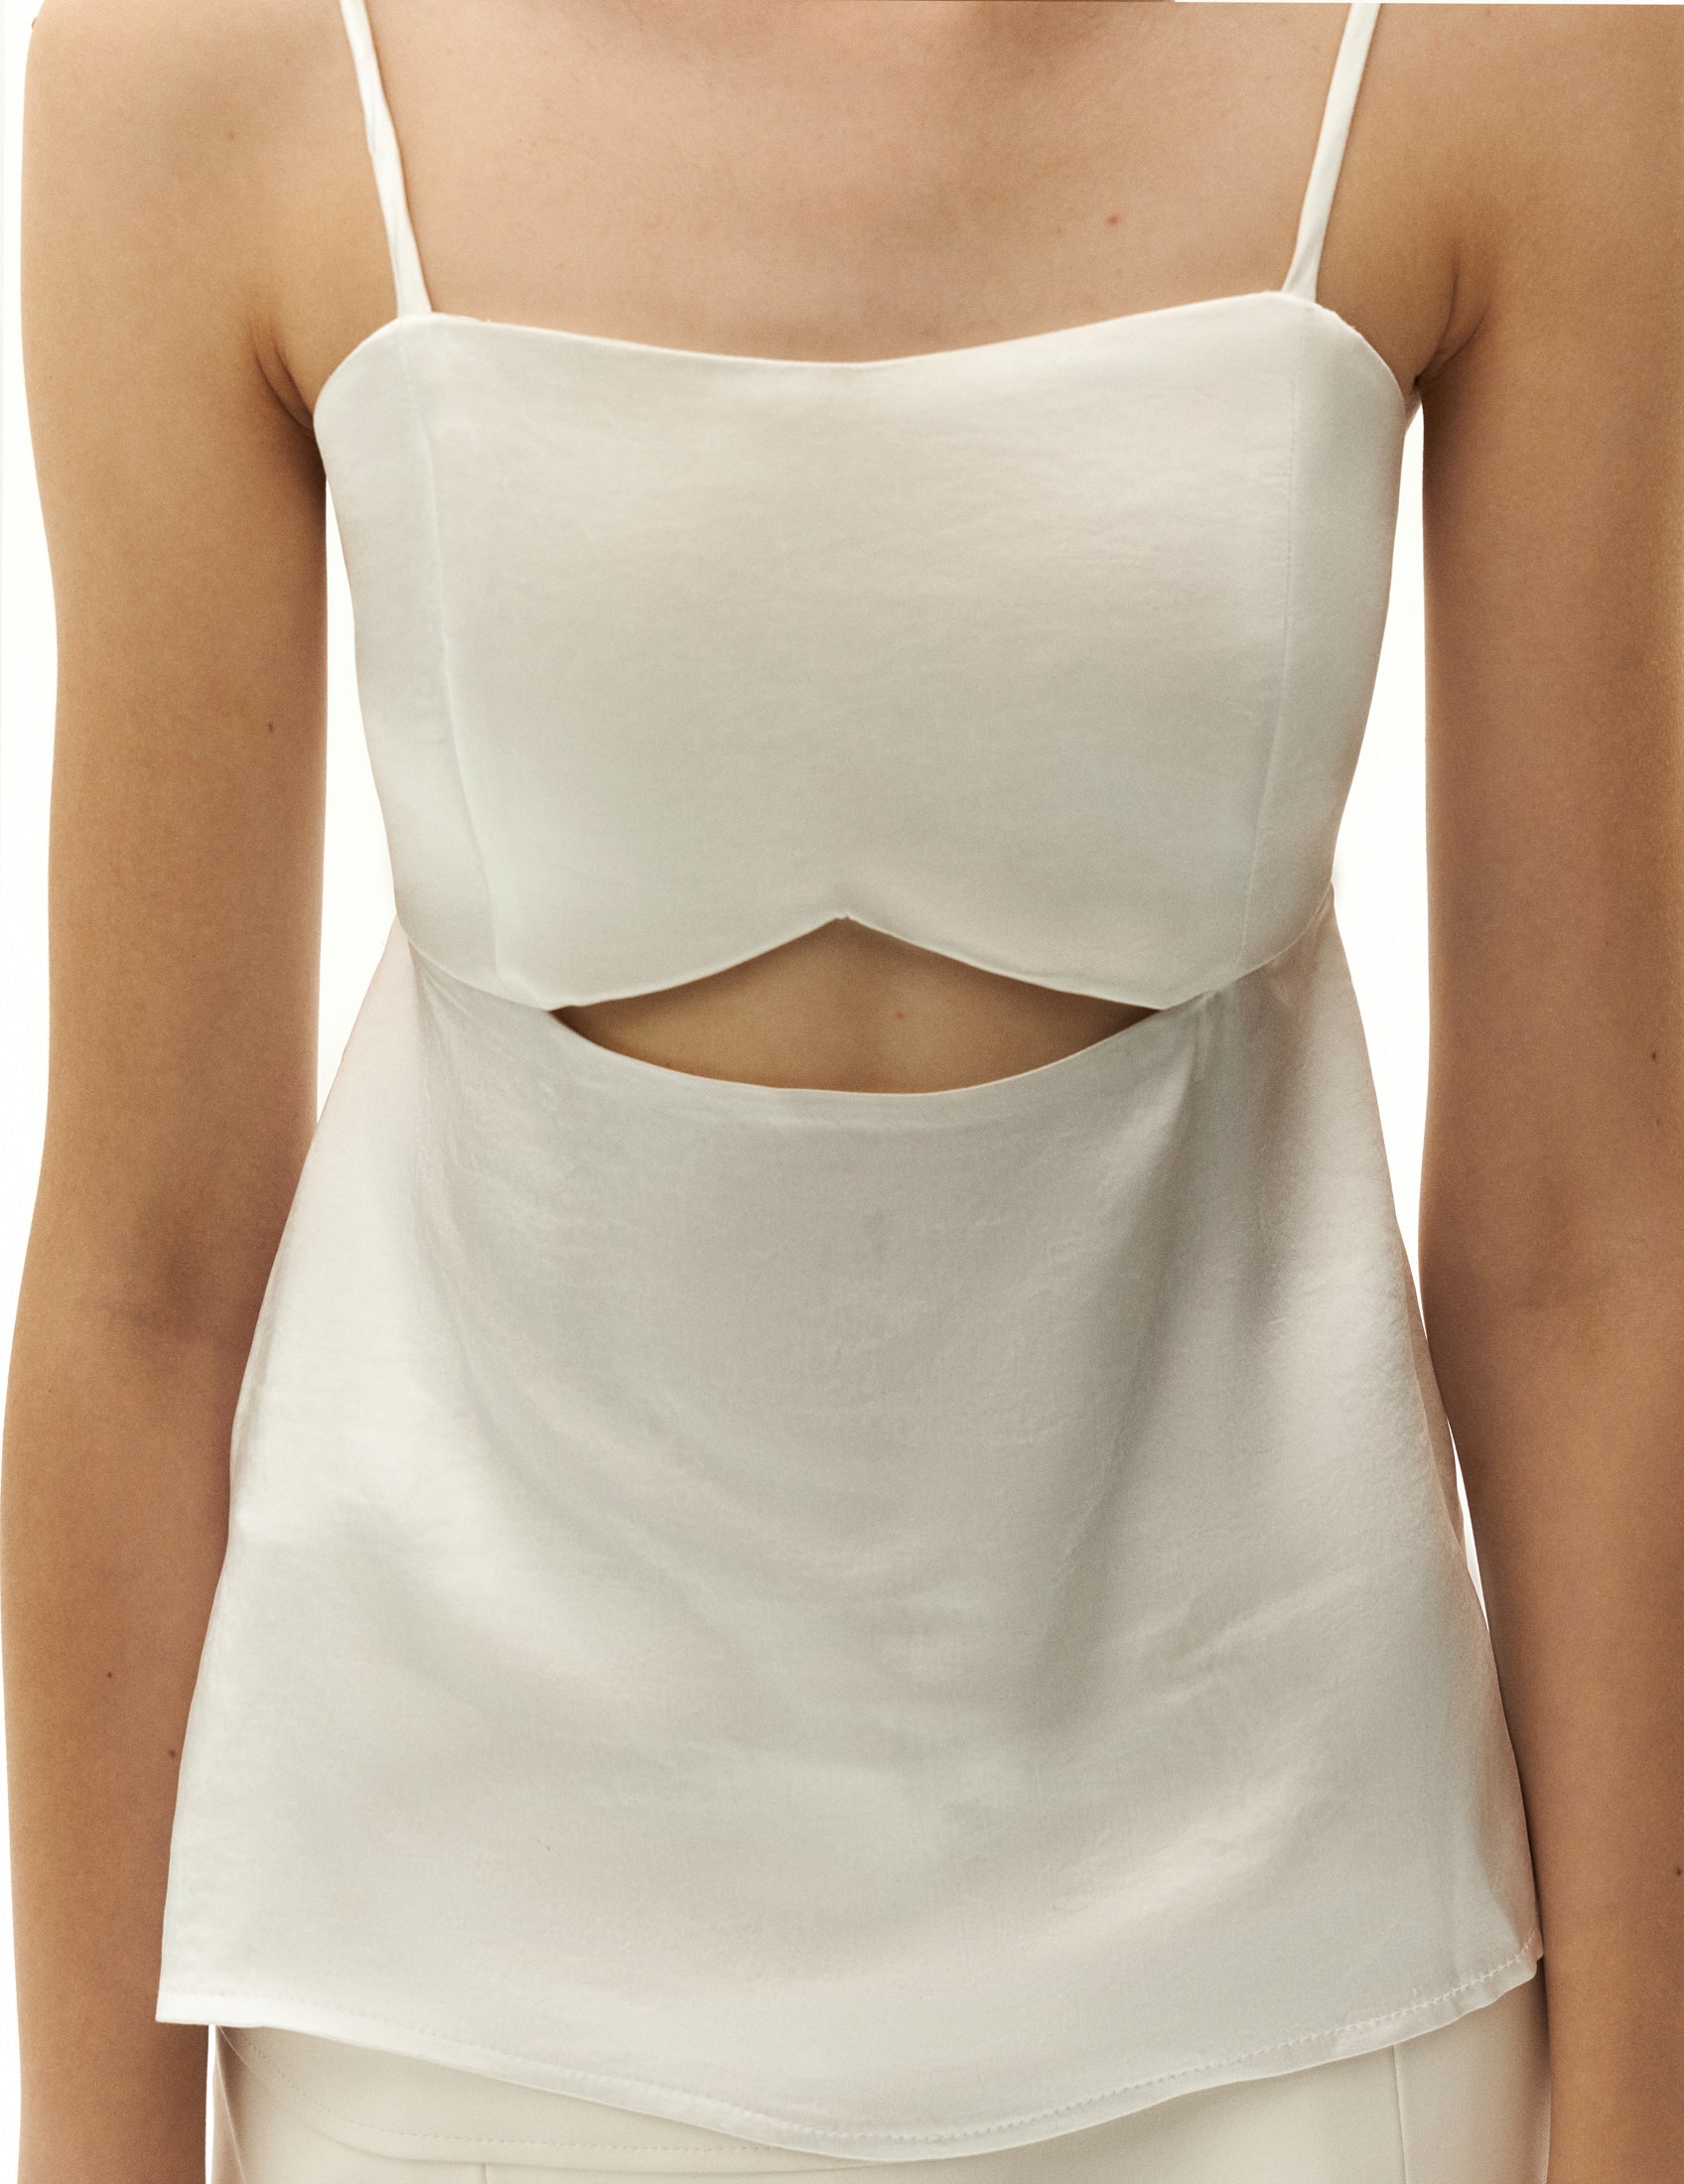 Білий топ з вирізами з шовковим фінішем від бренду ФОРМА. FORMA clothing brand